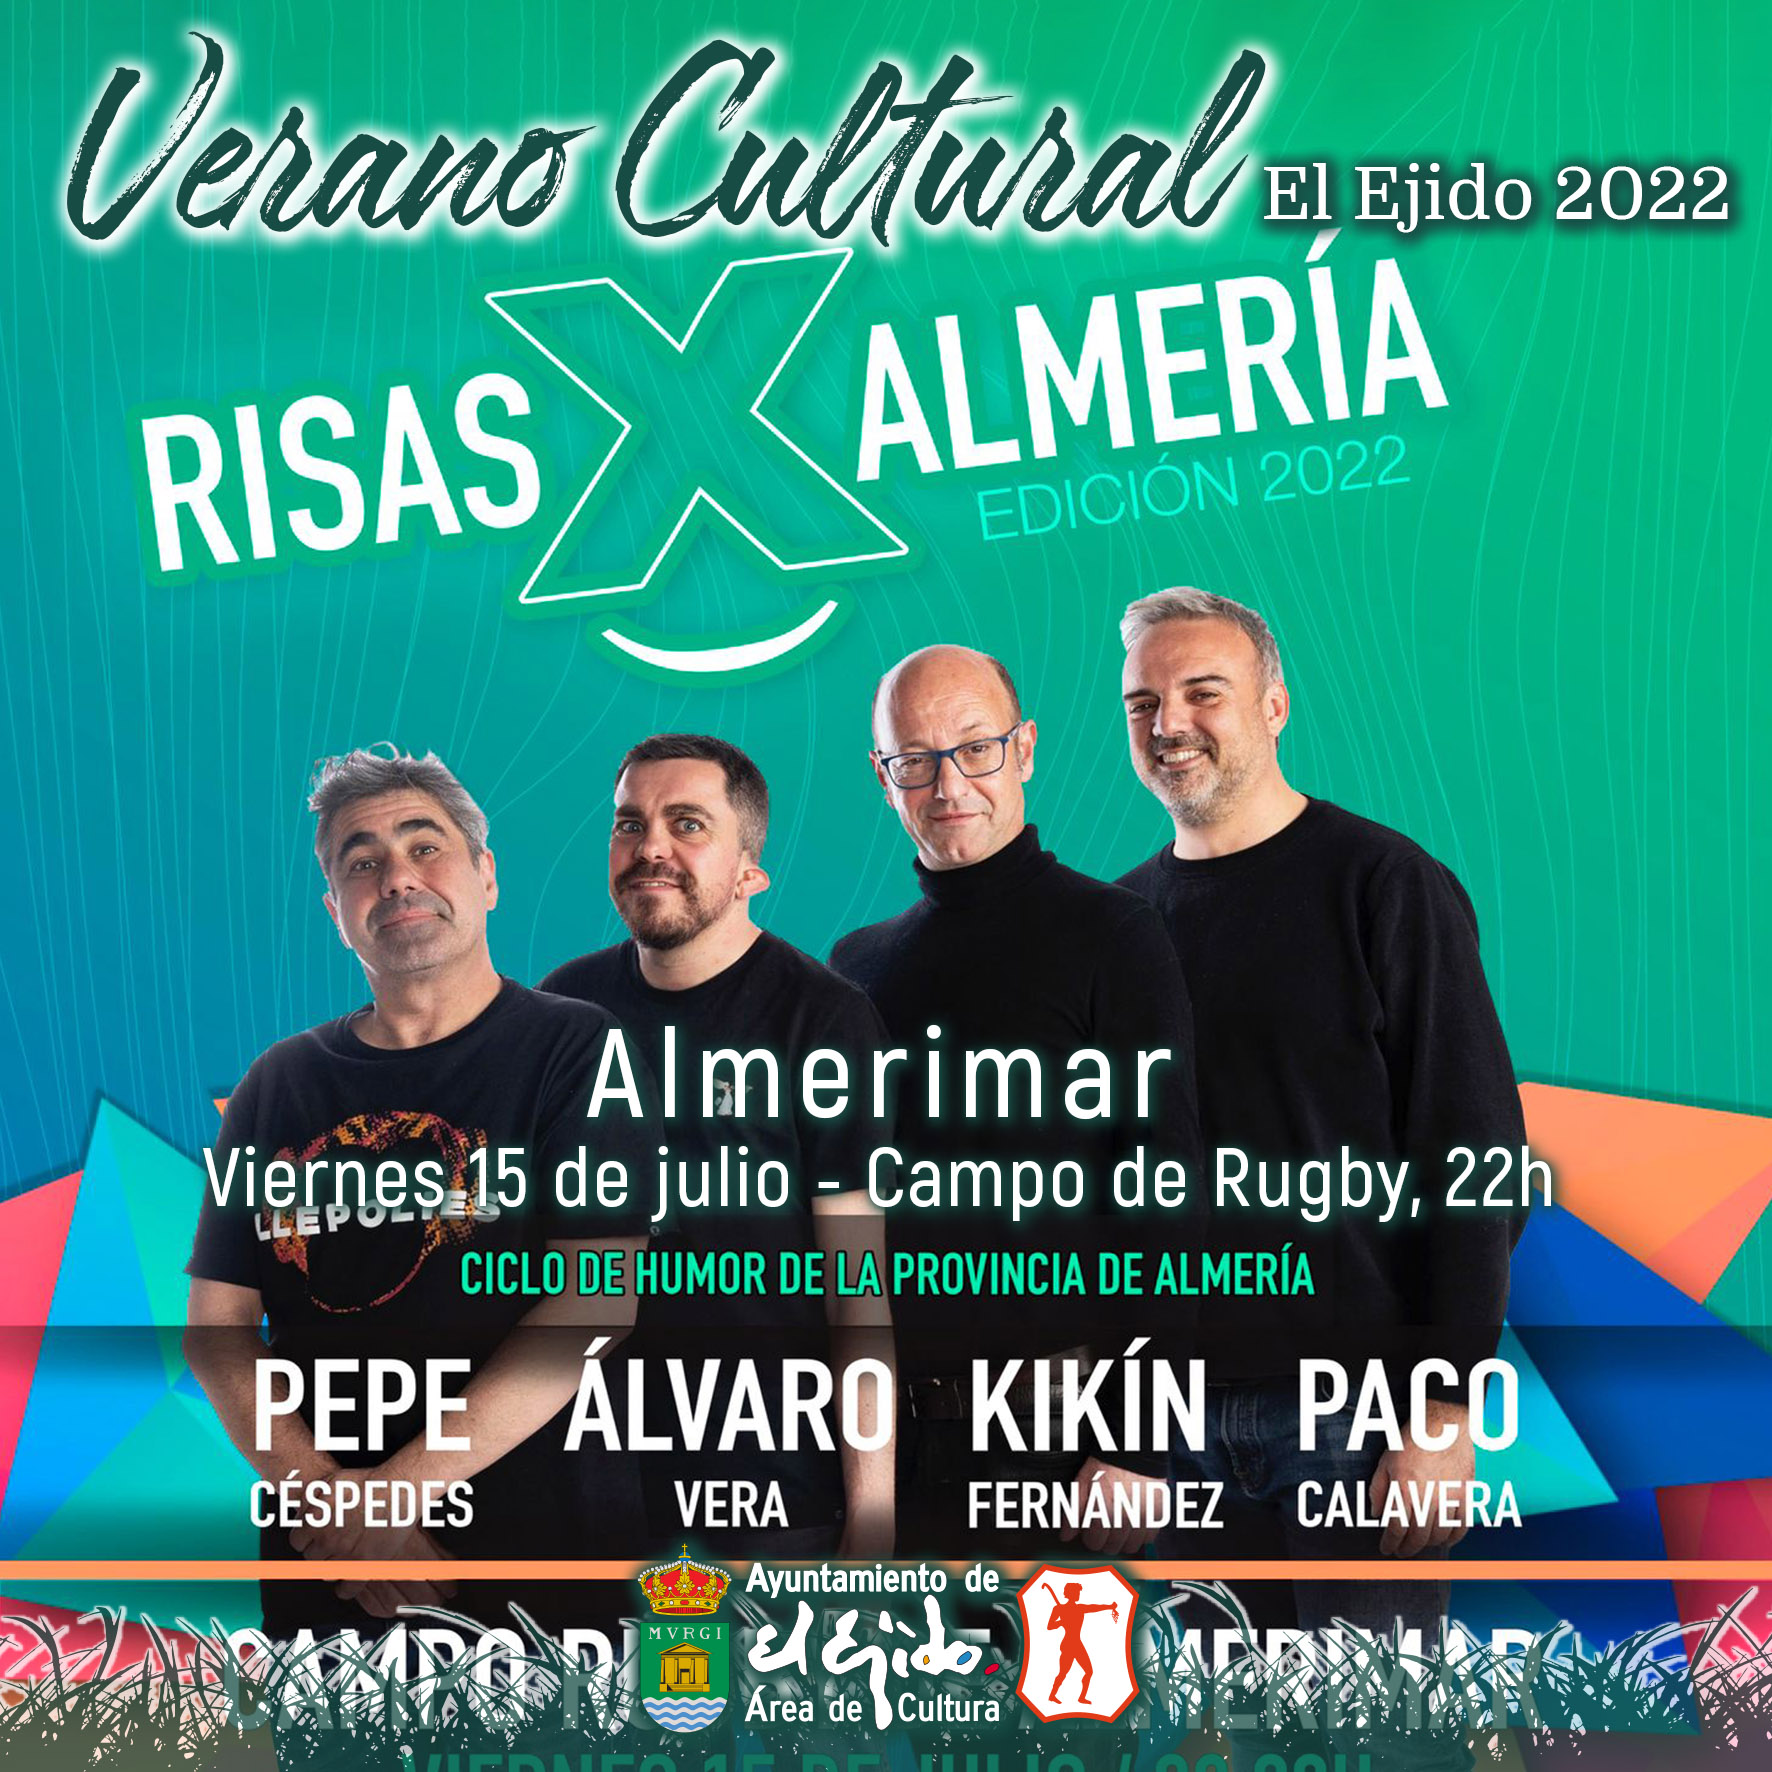 Verano Cultural 2022 de El Ejido – Teatro en Almerimar – Risas X Almería 2022